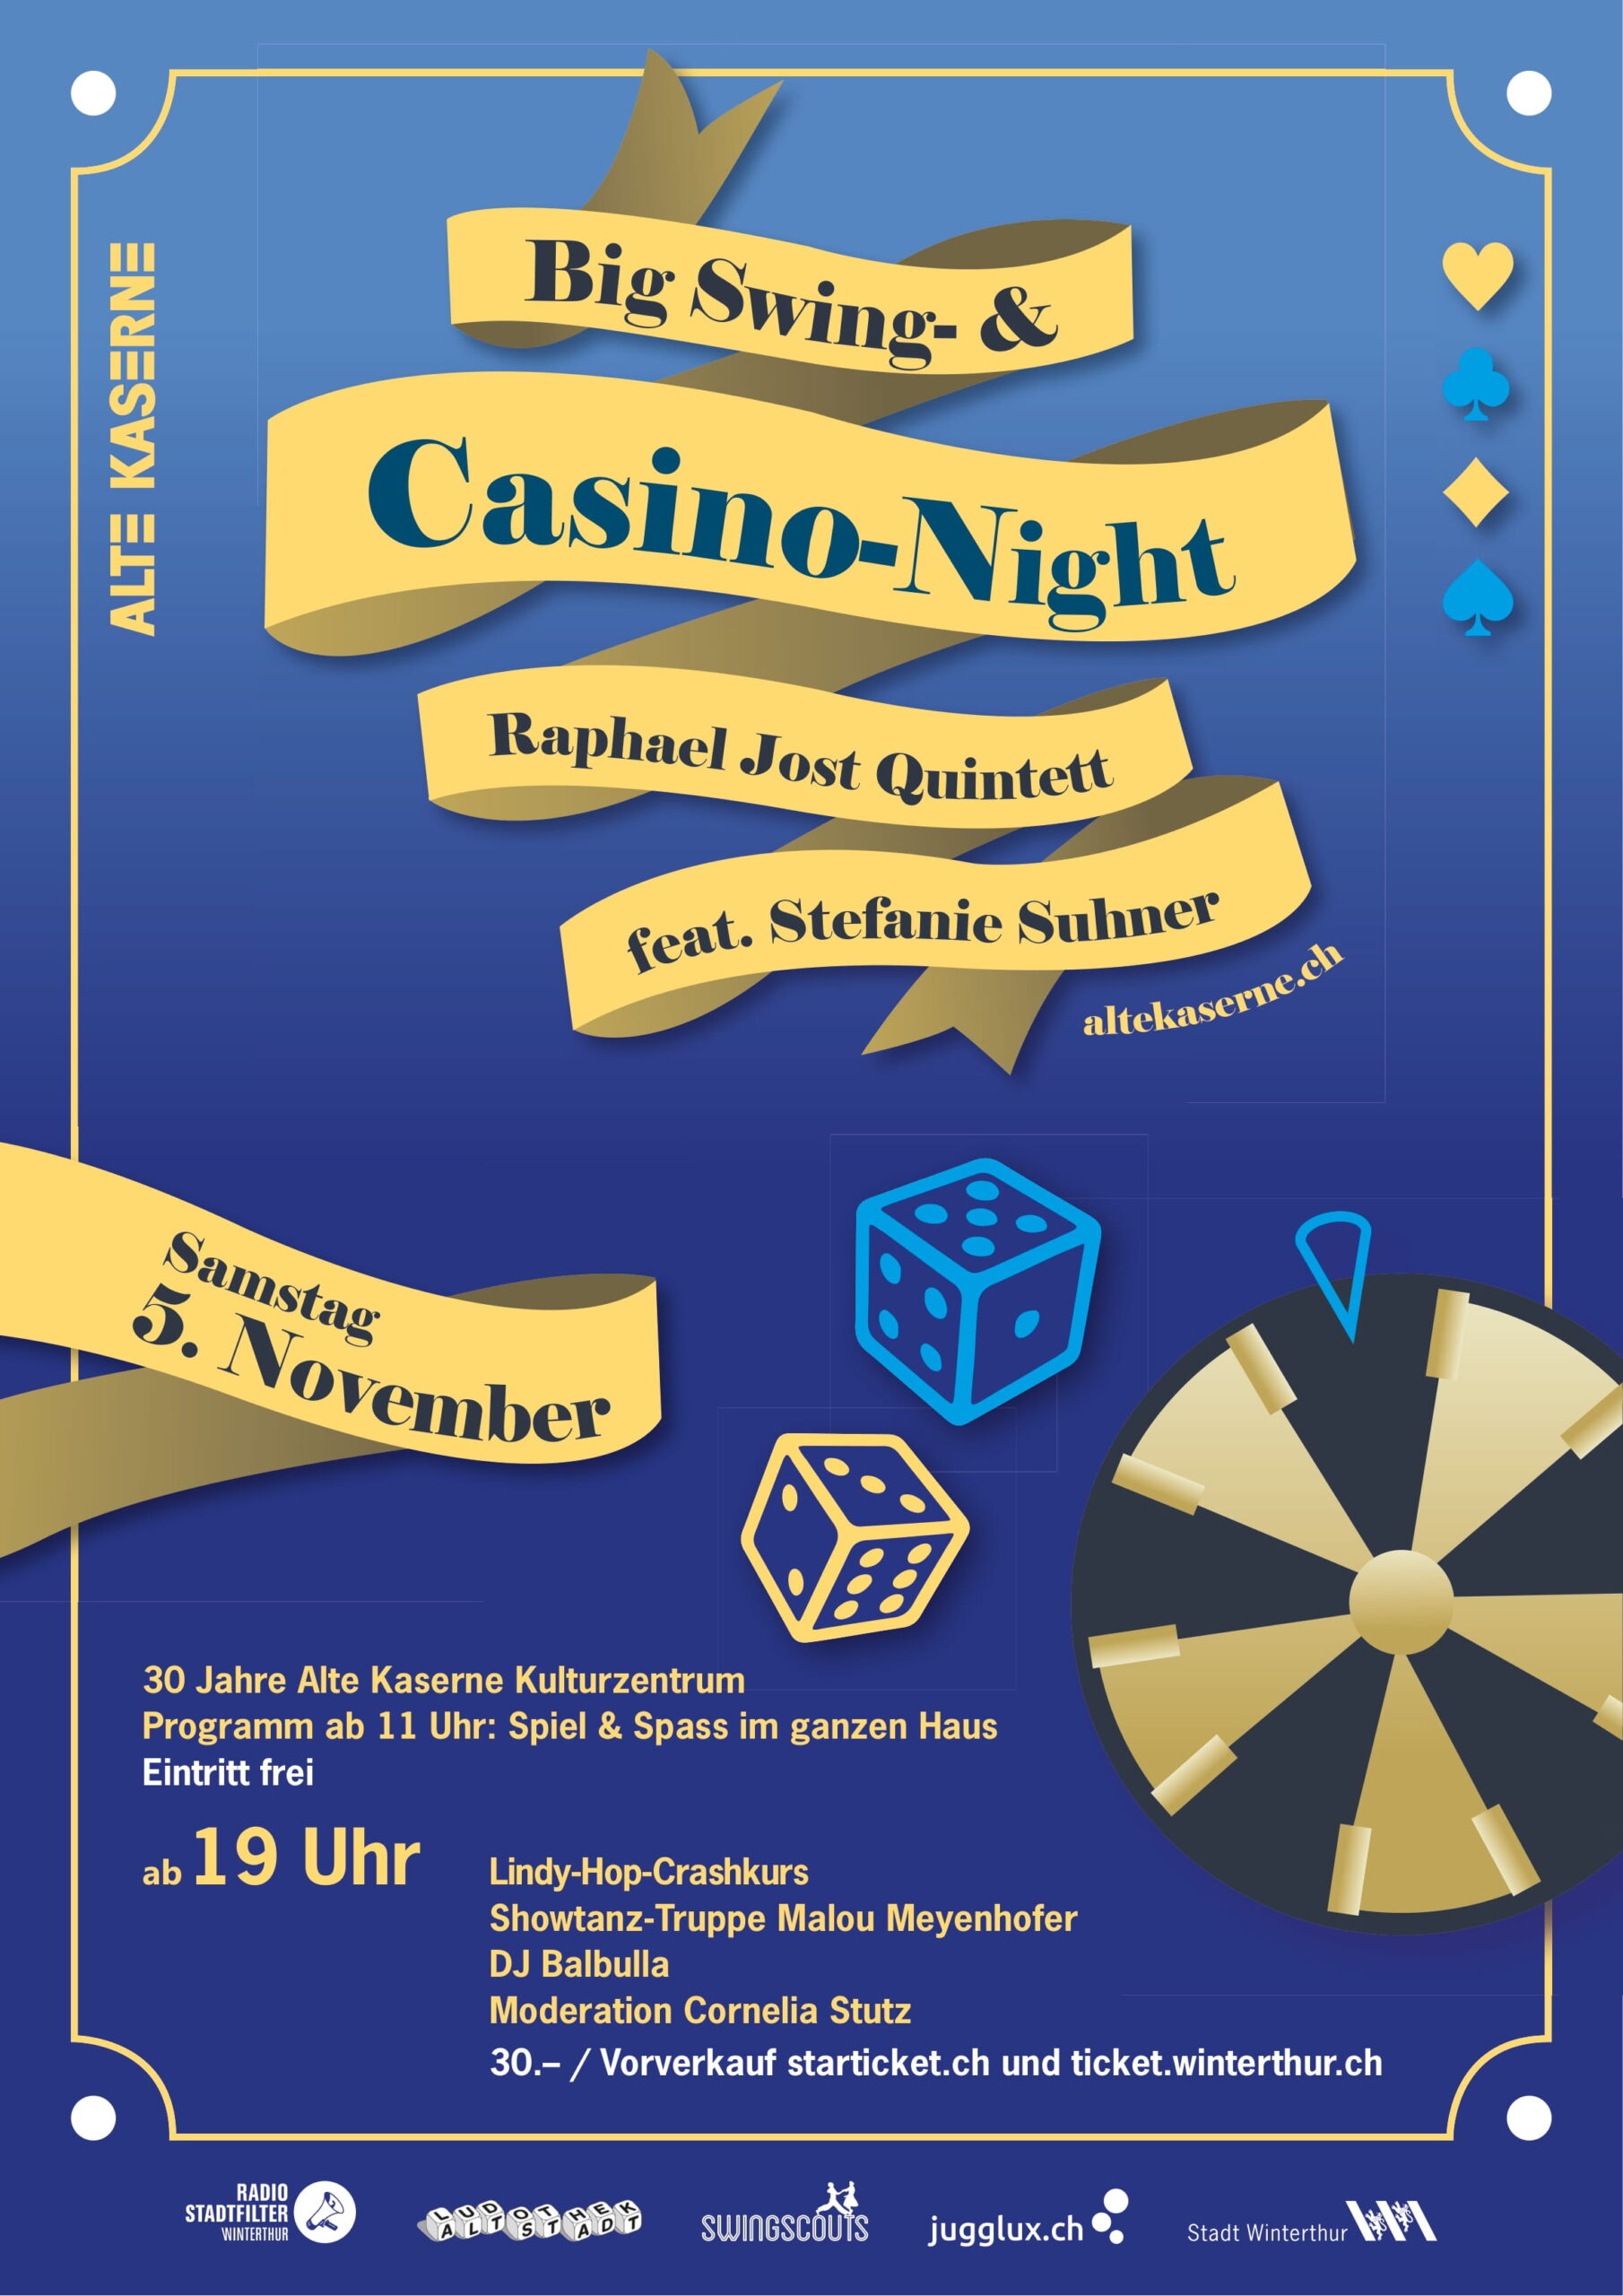 Sa, 5.11.22 # Big Swing- und Casino Night mit Raphael Jost Quintett feat. Stefanie Suhner